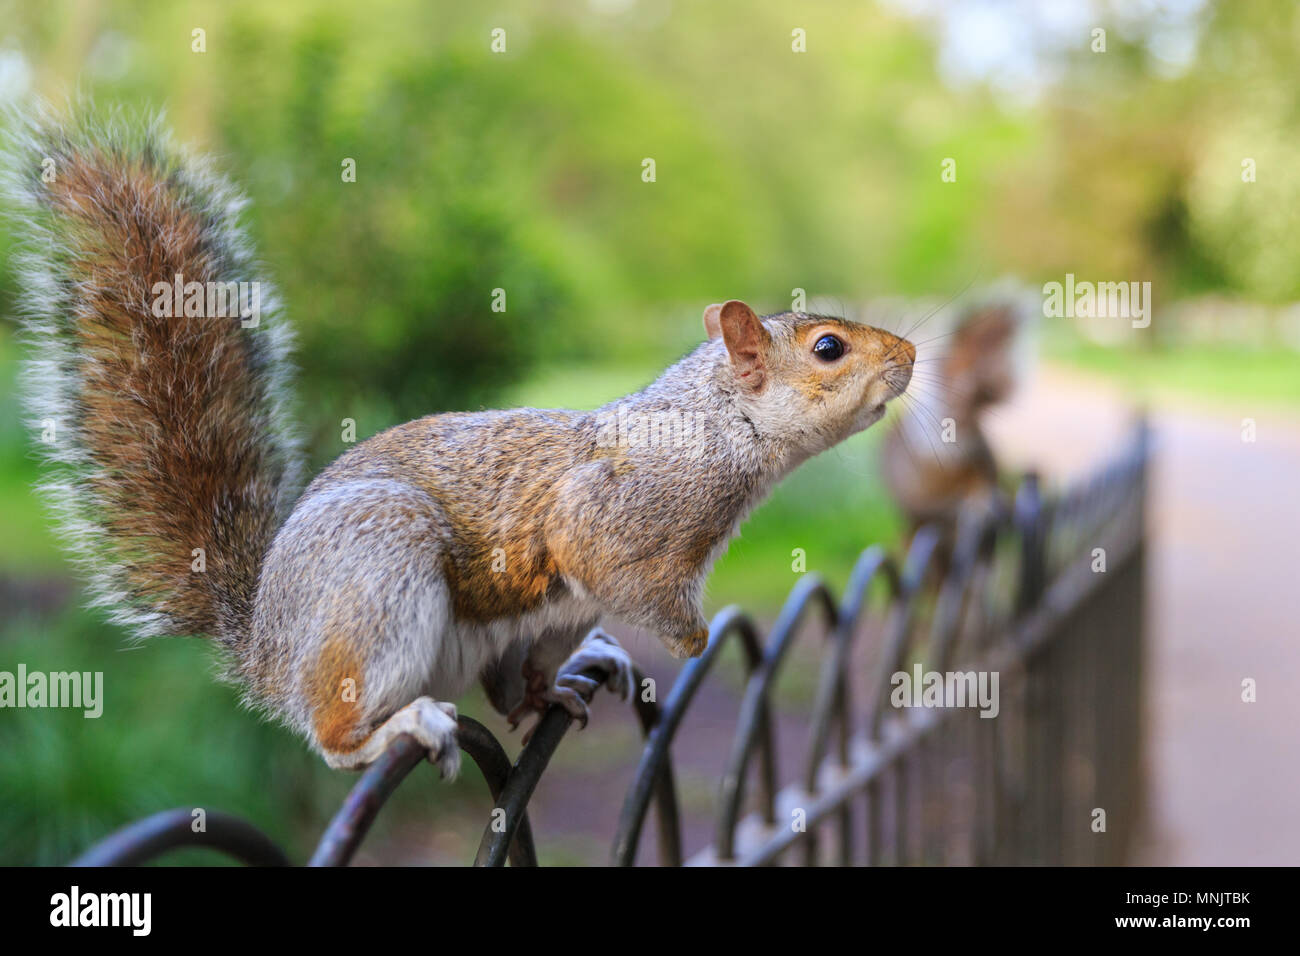 Un mignon petit écureuil gris (Sciurus carolinensis), ou l'écureuil gris, est assis sur une clôture dans un parc, journée ensoleillée, UK Banque D'Images